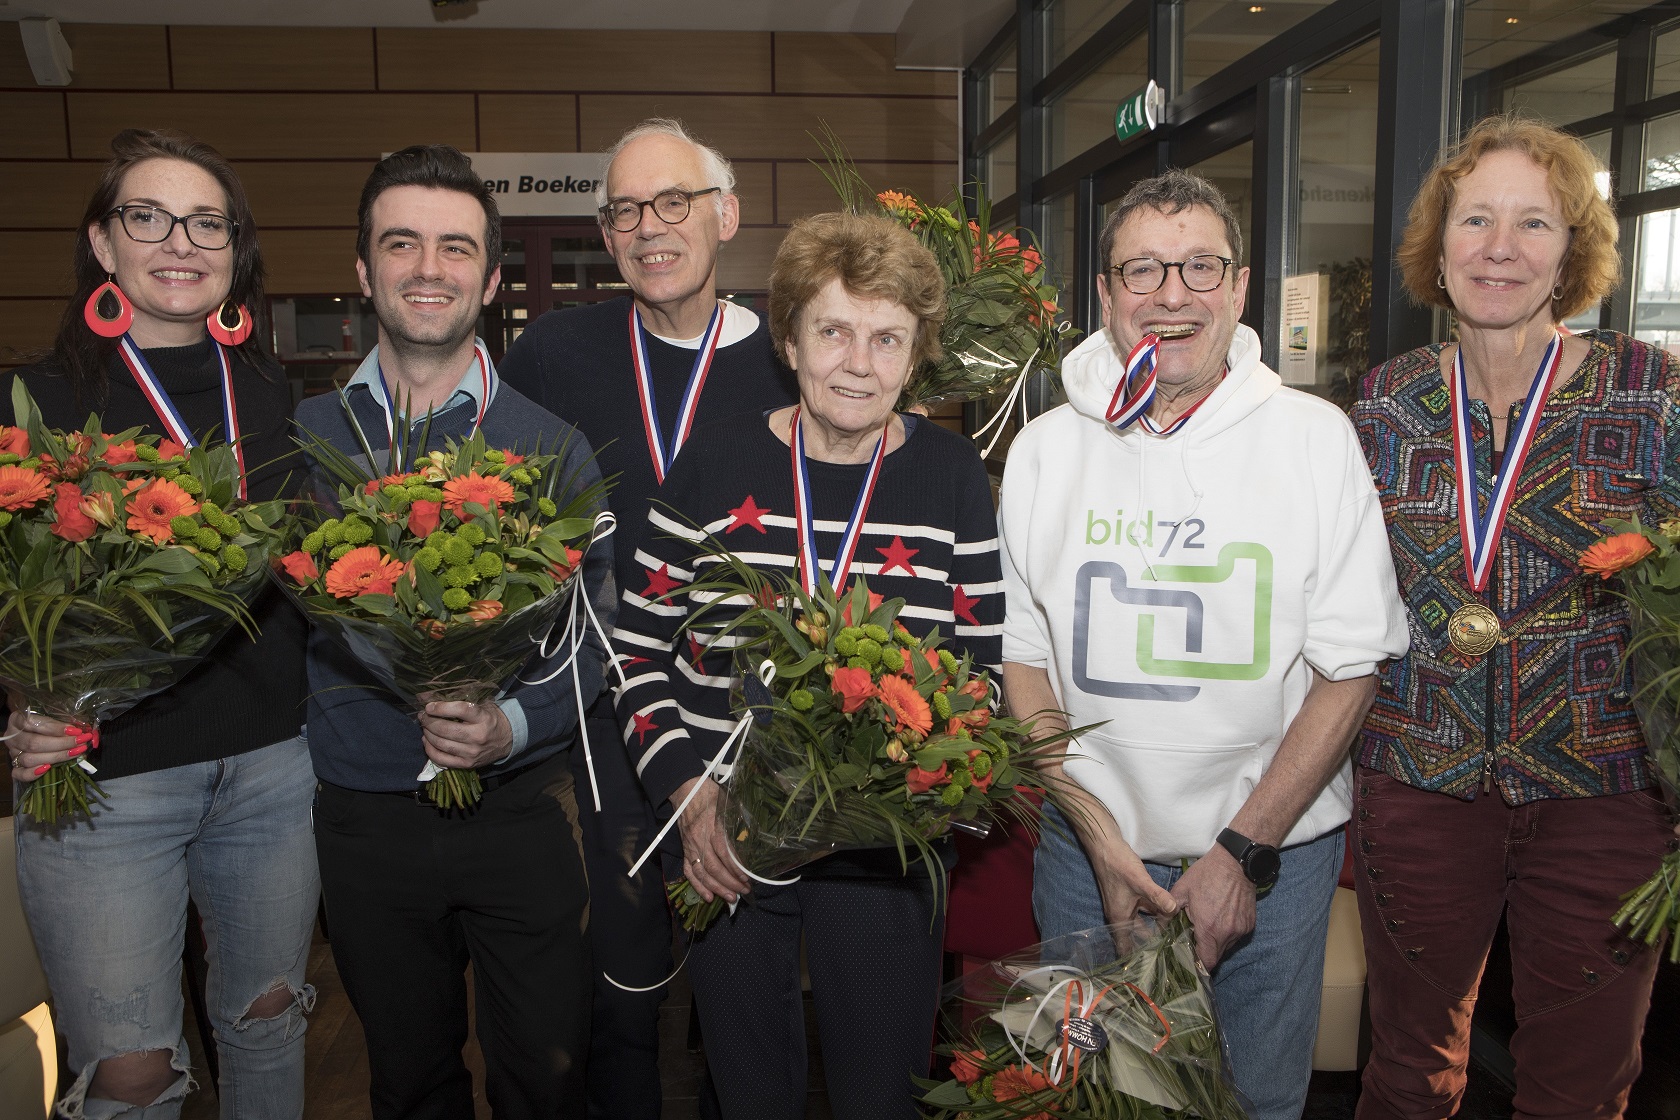 De medaillewinnaars: van links Van der Toorn, De Pagter, Maas, Vriend, Van Cleeff, Witvliet (Louk Herber)